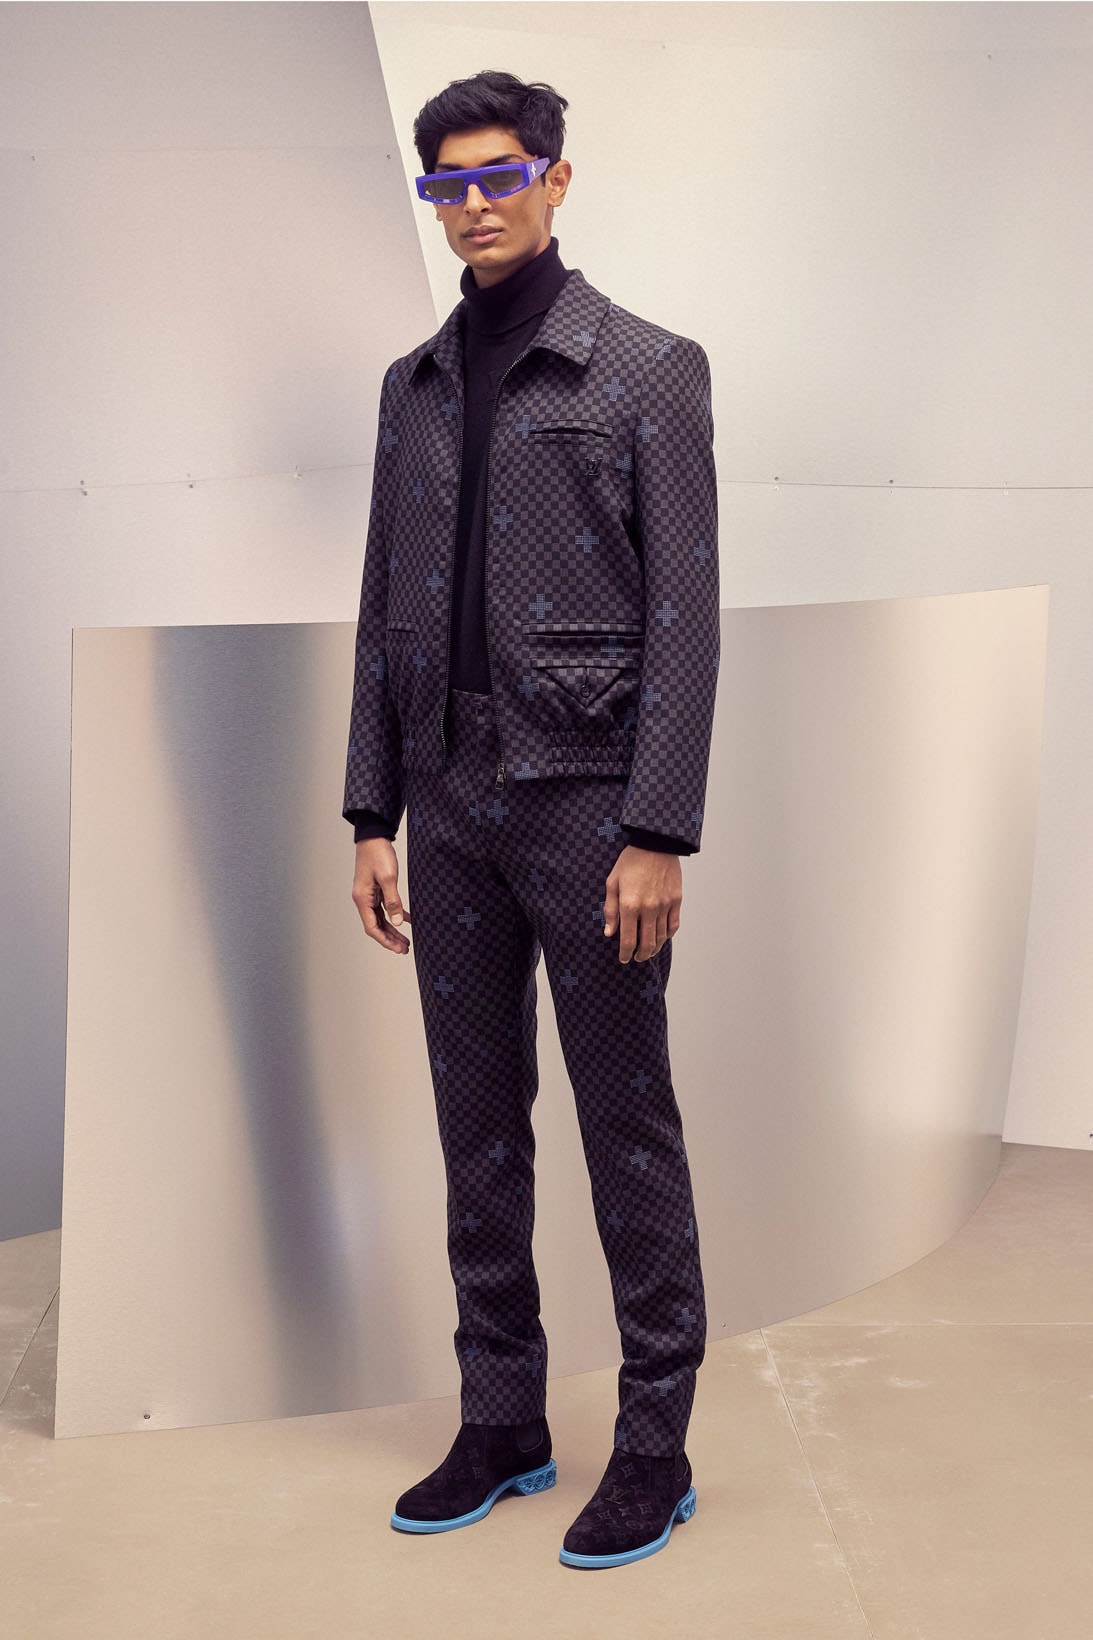 Louis Vuitton Men's Virgil Abloh Pre-Fall 2022 Collection Suit